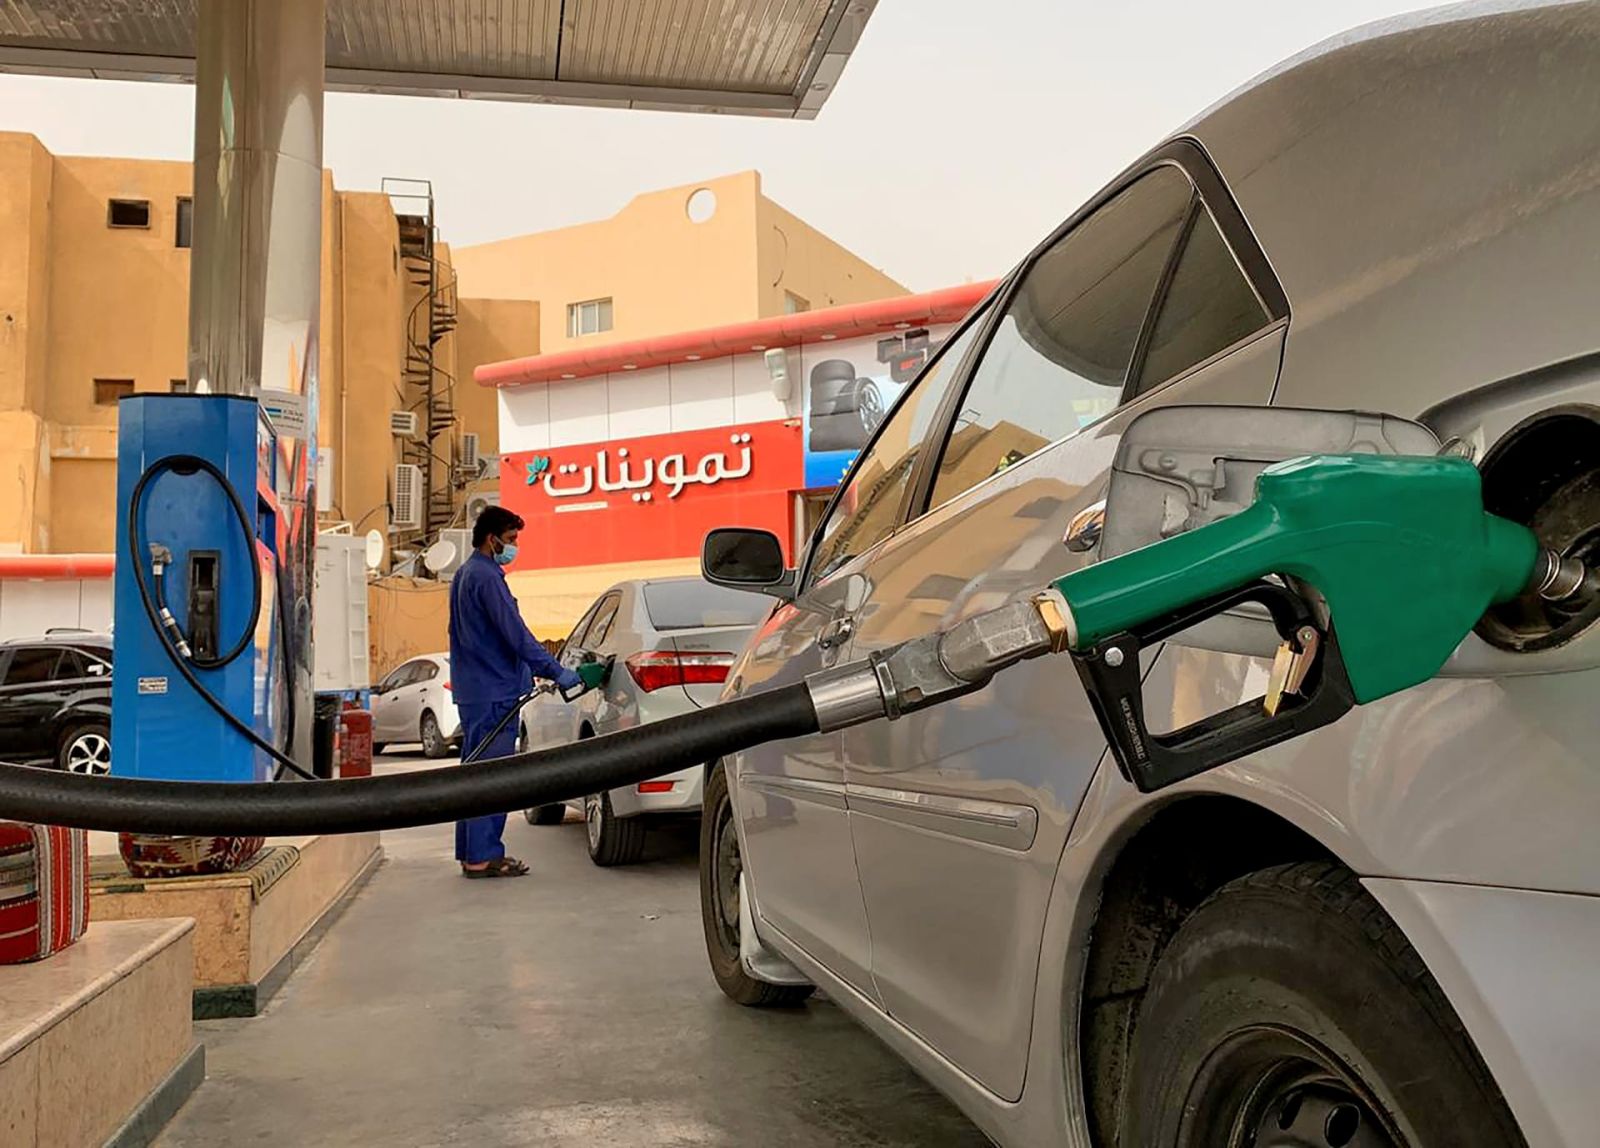 هل تم تخفيض سعر البنزين في السعودية